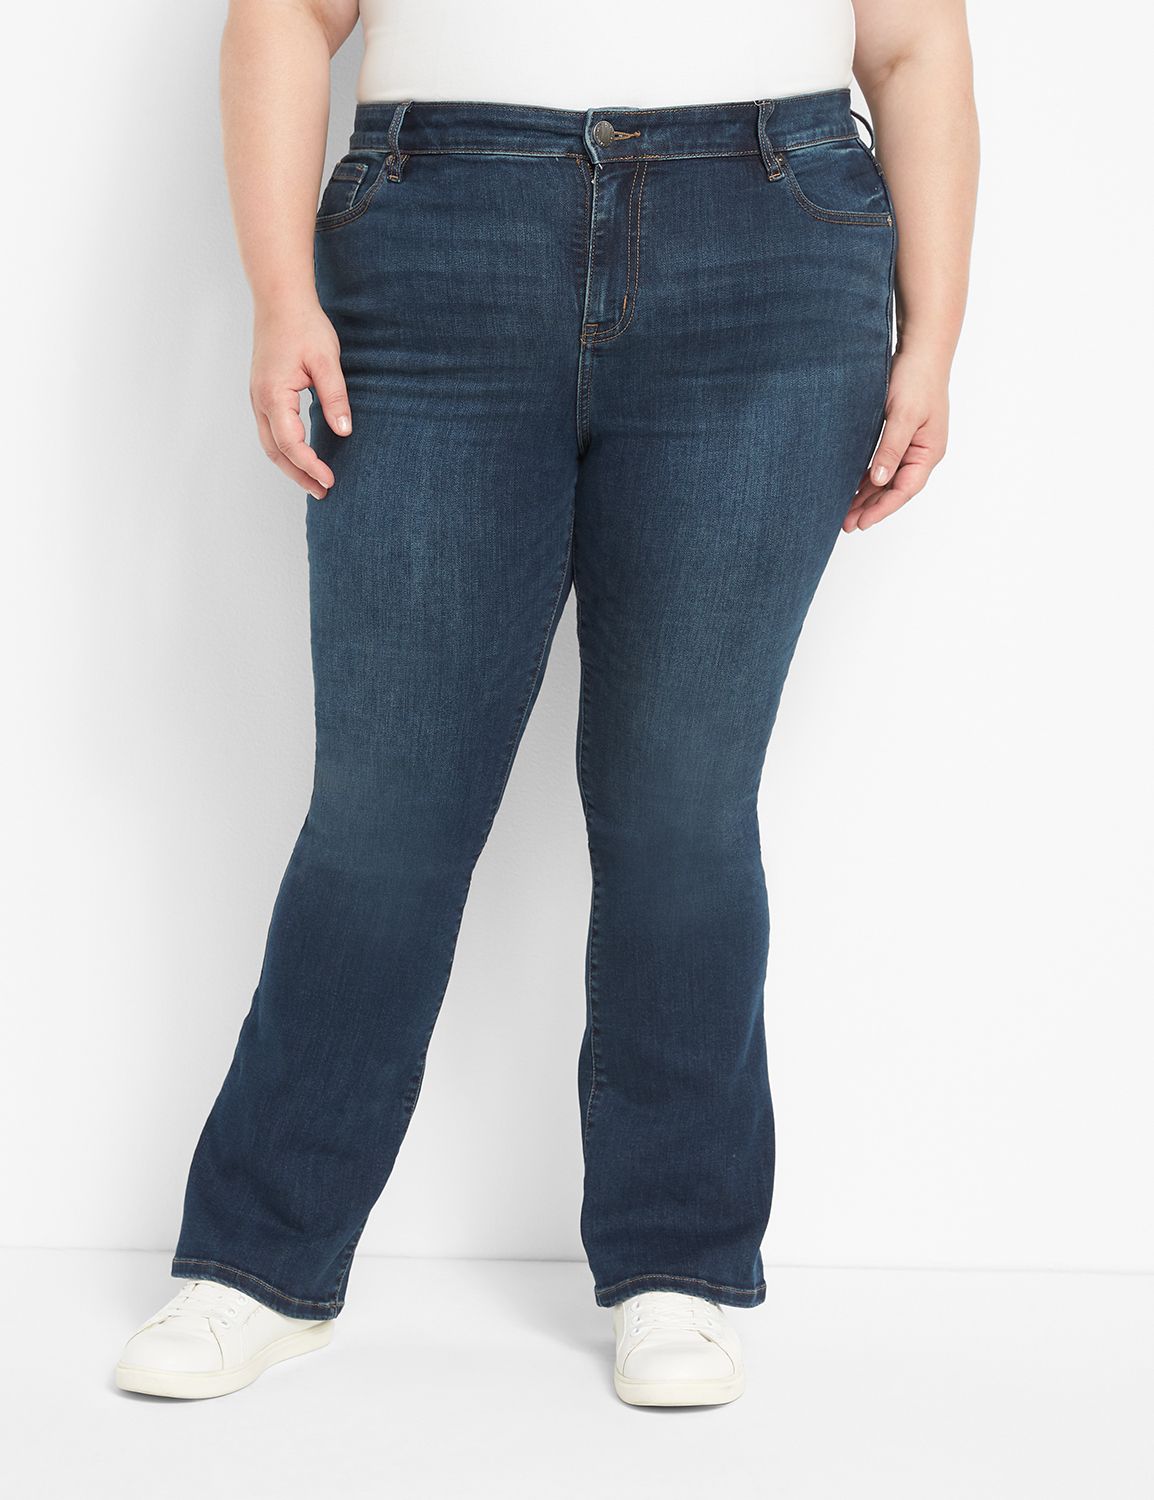 Lane Bryant Skinny Jeans for Women - Poshmark